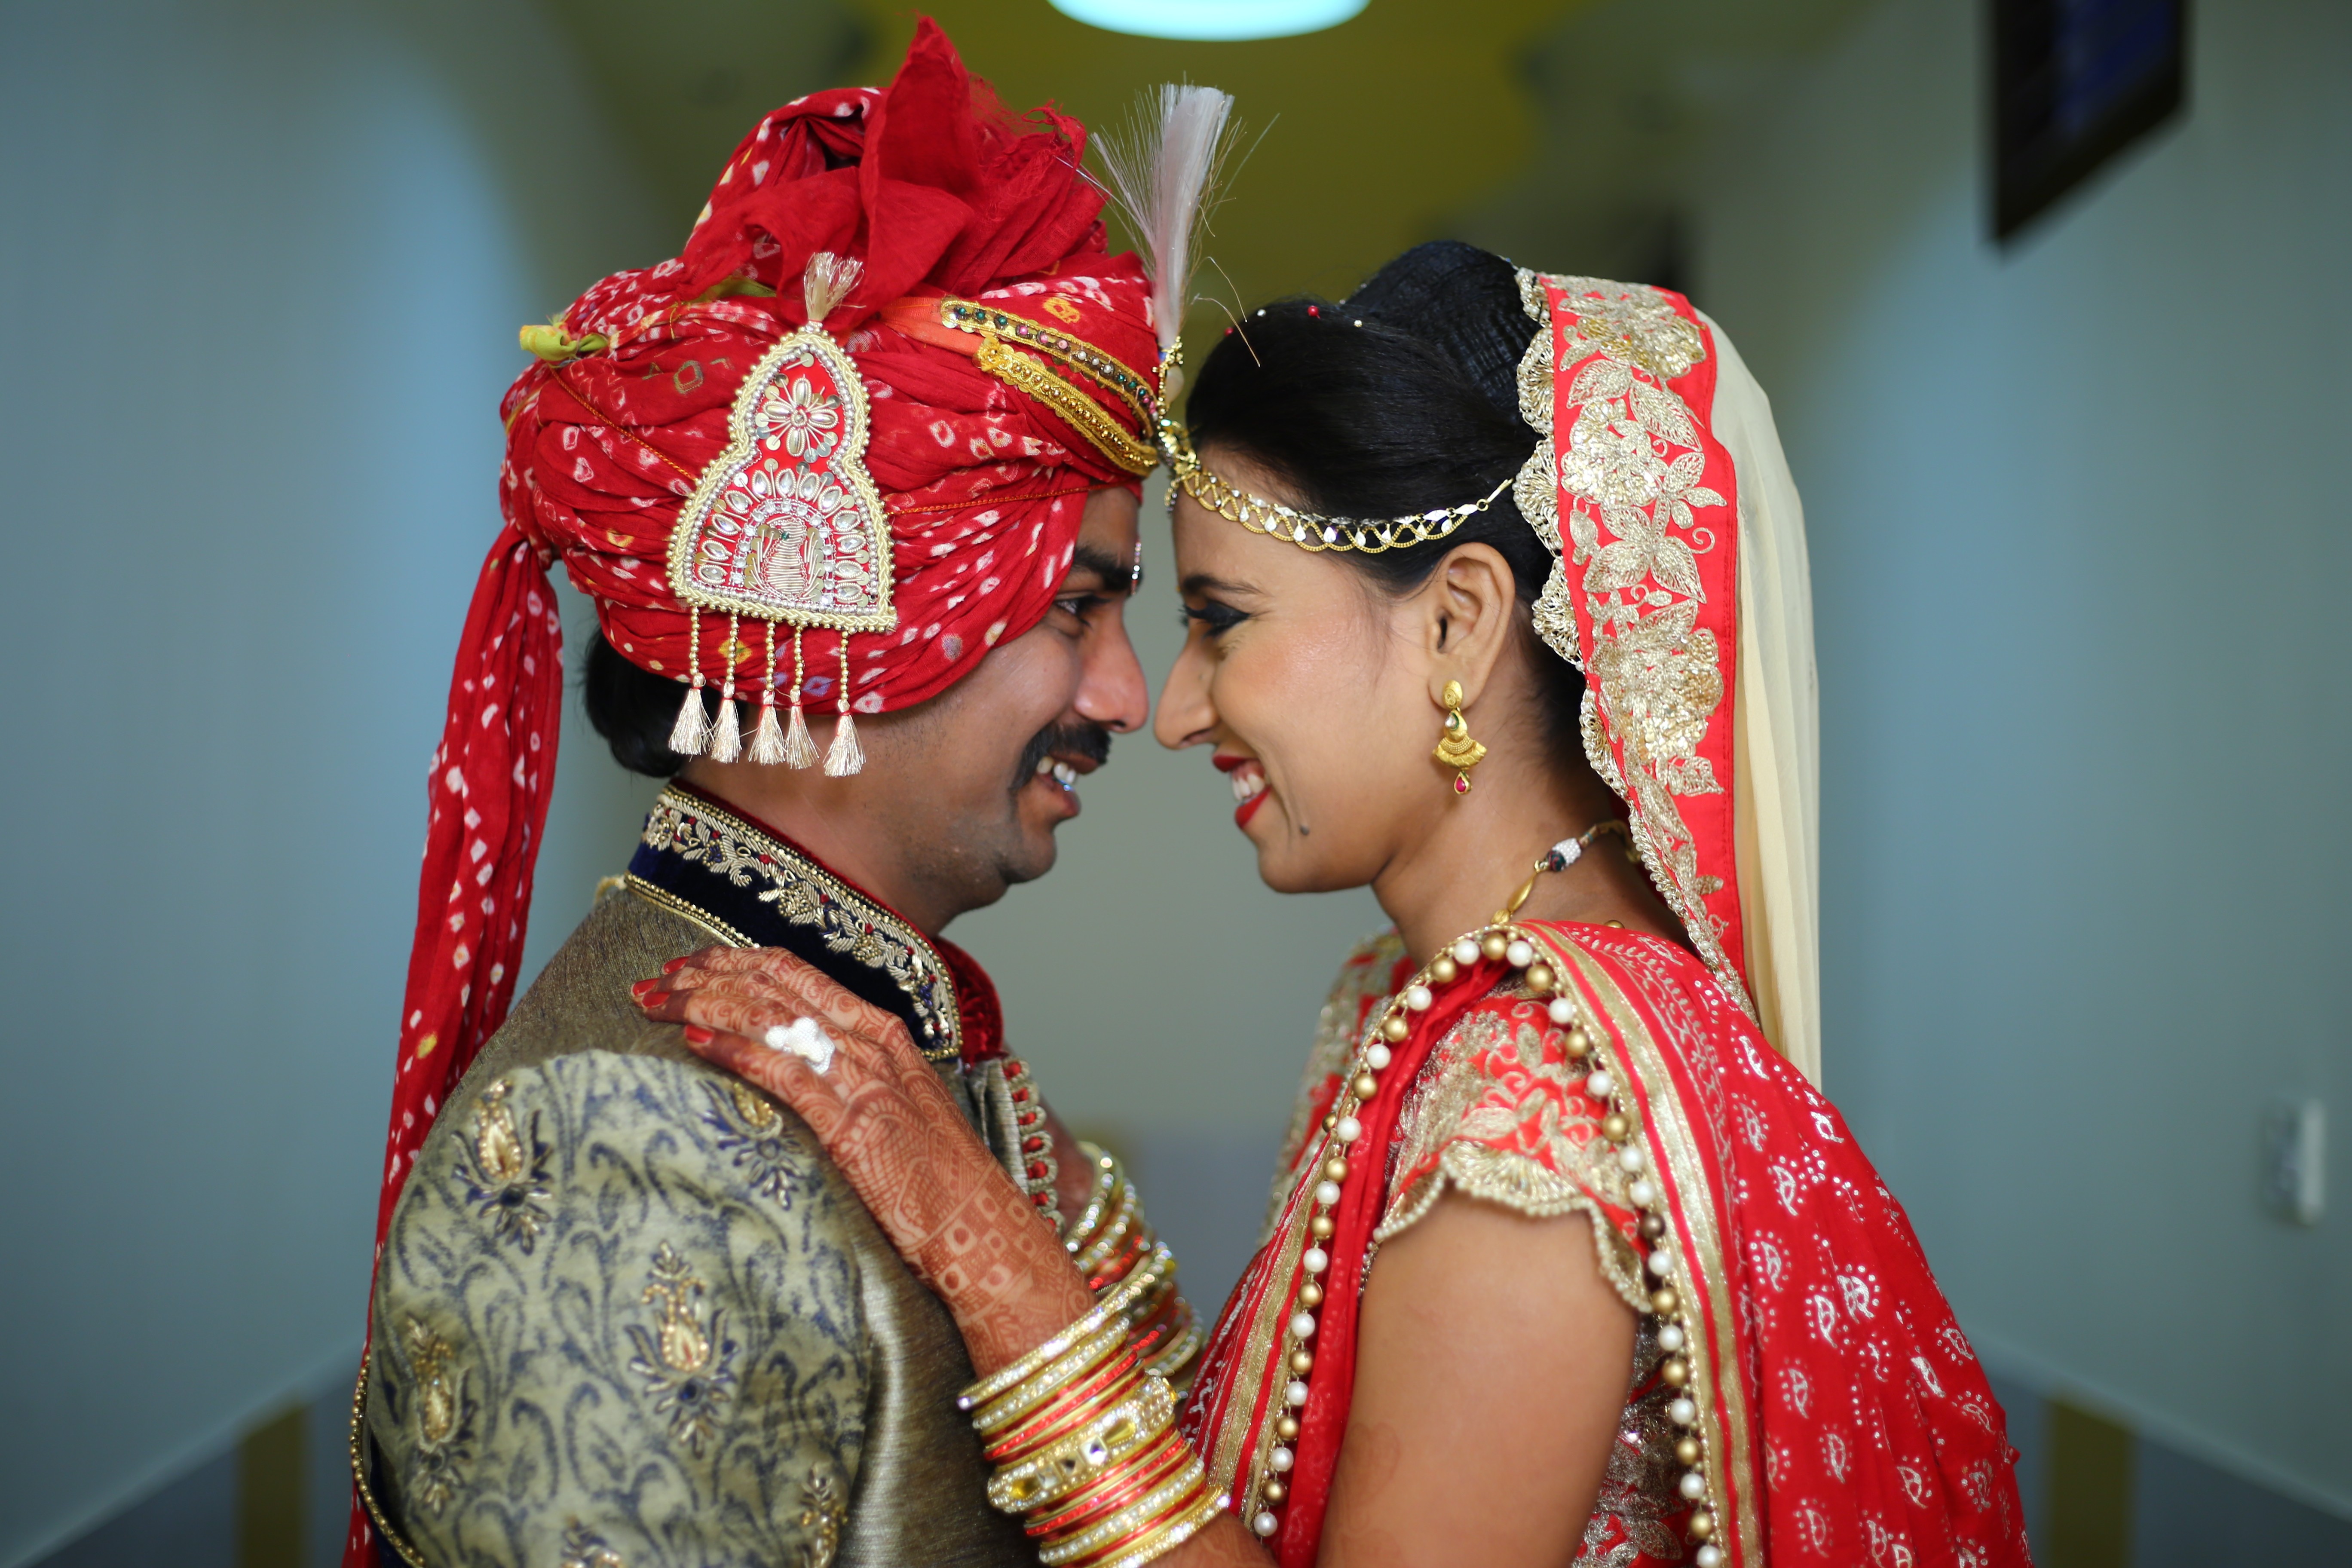 Noivo morre e quase 100 pessoas testam positivo para COVID-19 após casamento em Bihar, India (Foto: Getty Images)